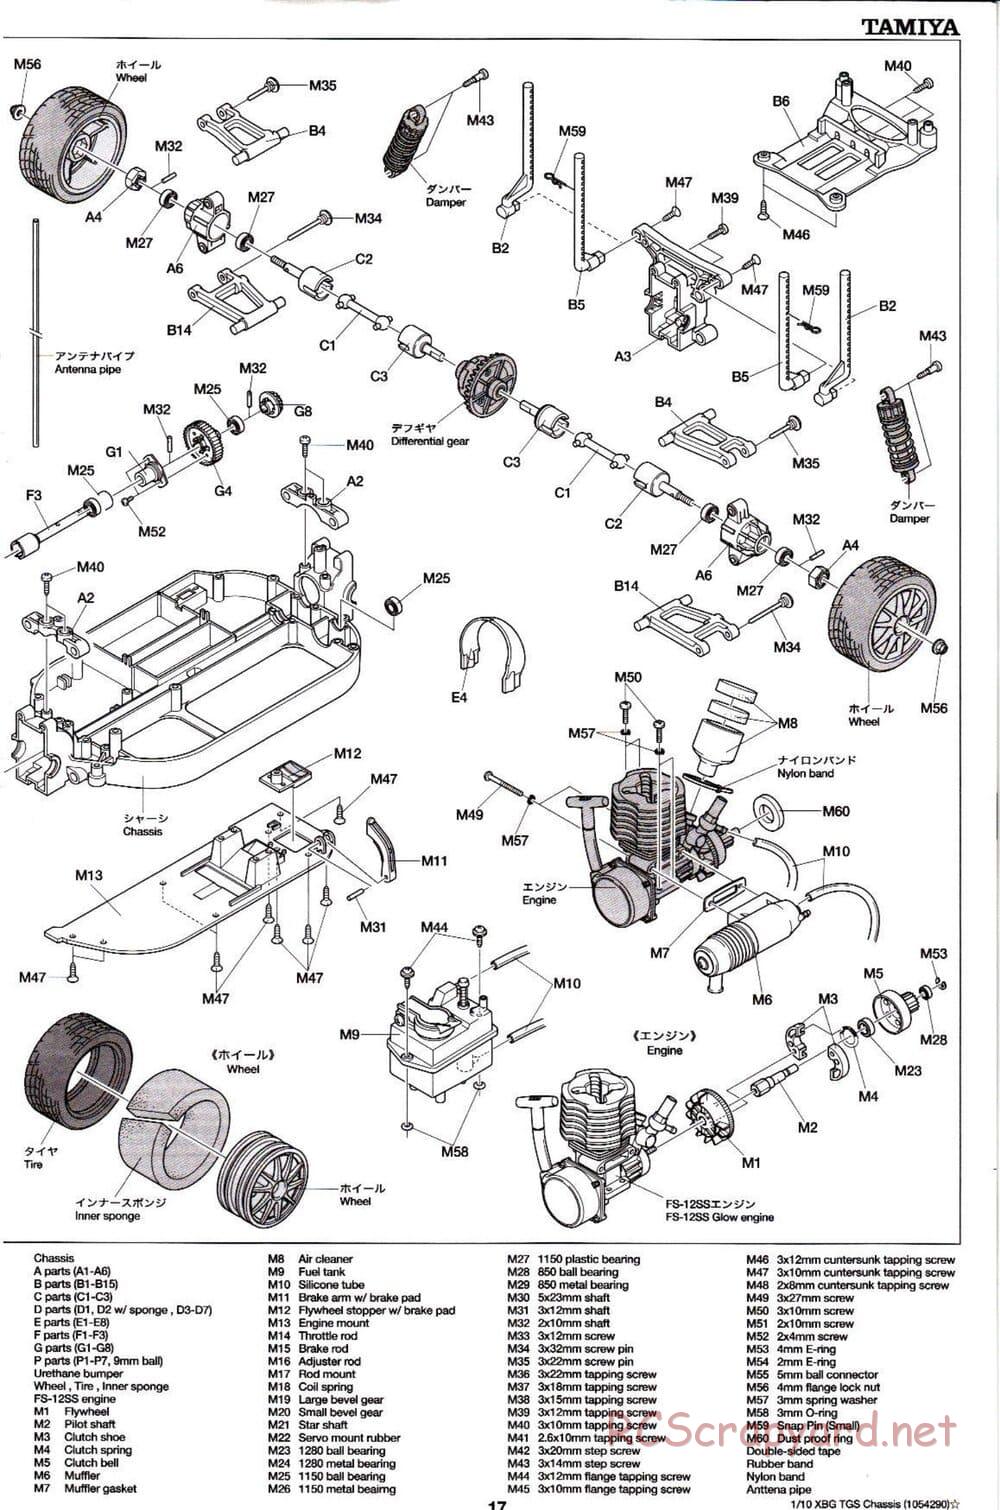 Tamiya - TGS Chassis - Manual - Page 17